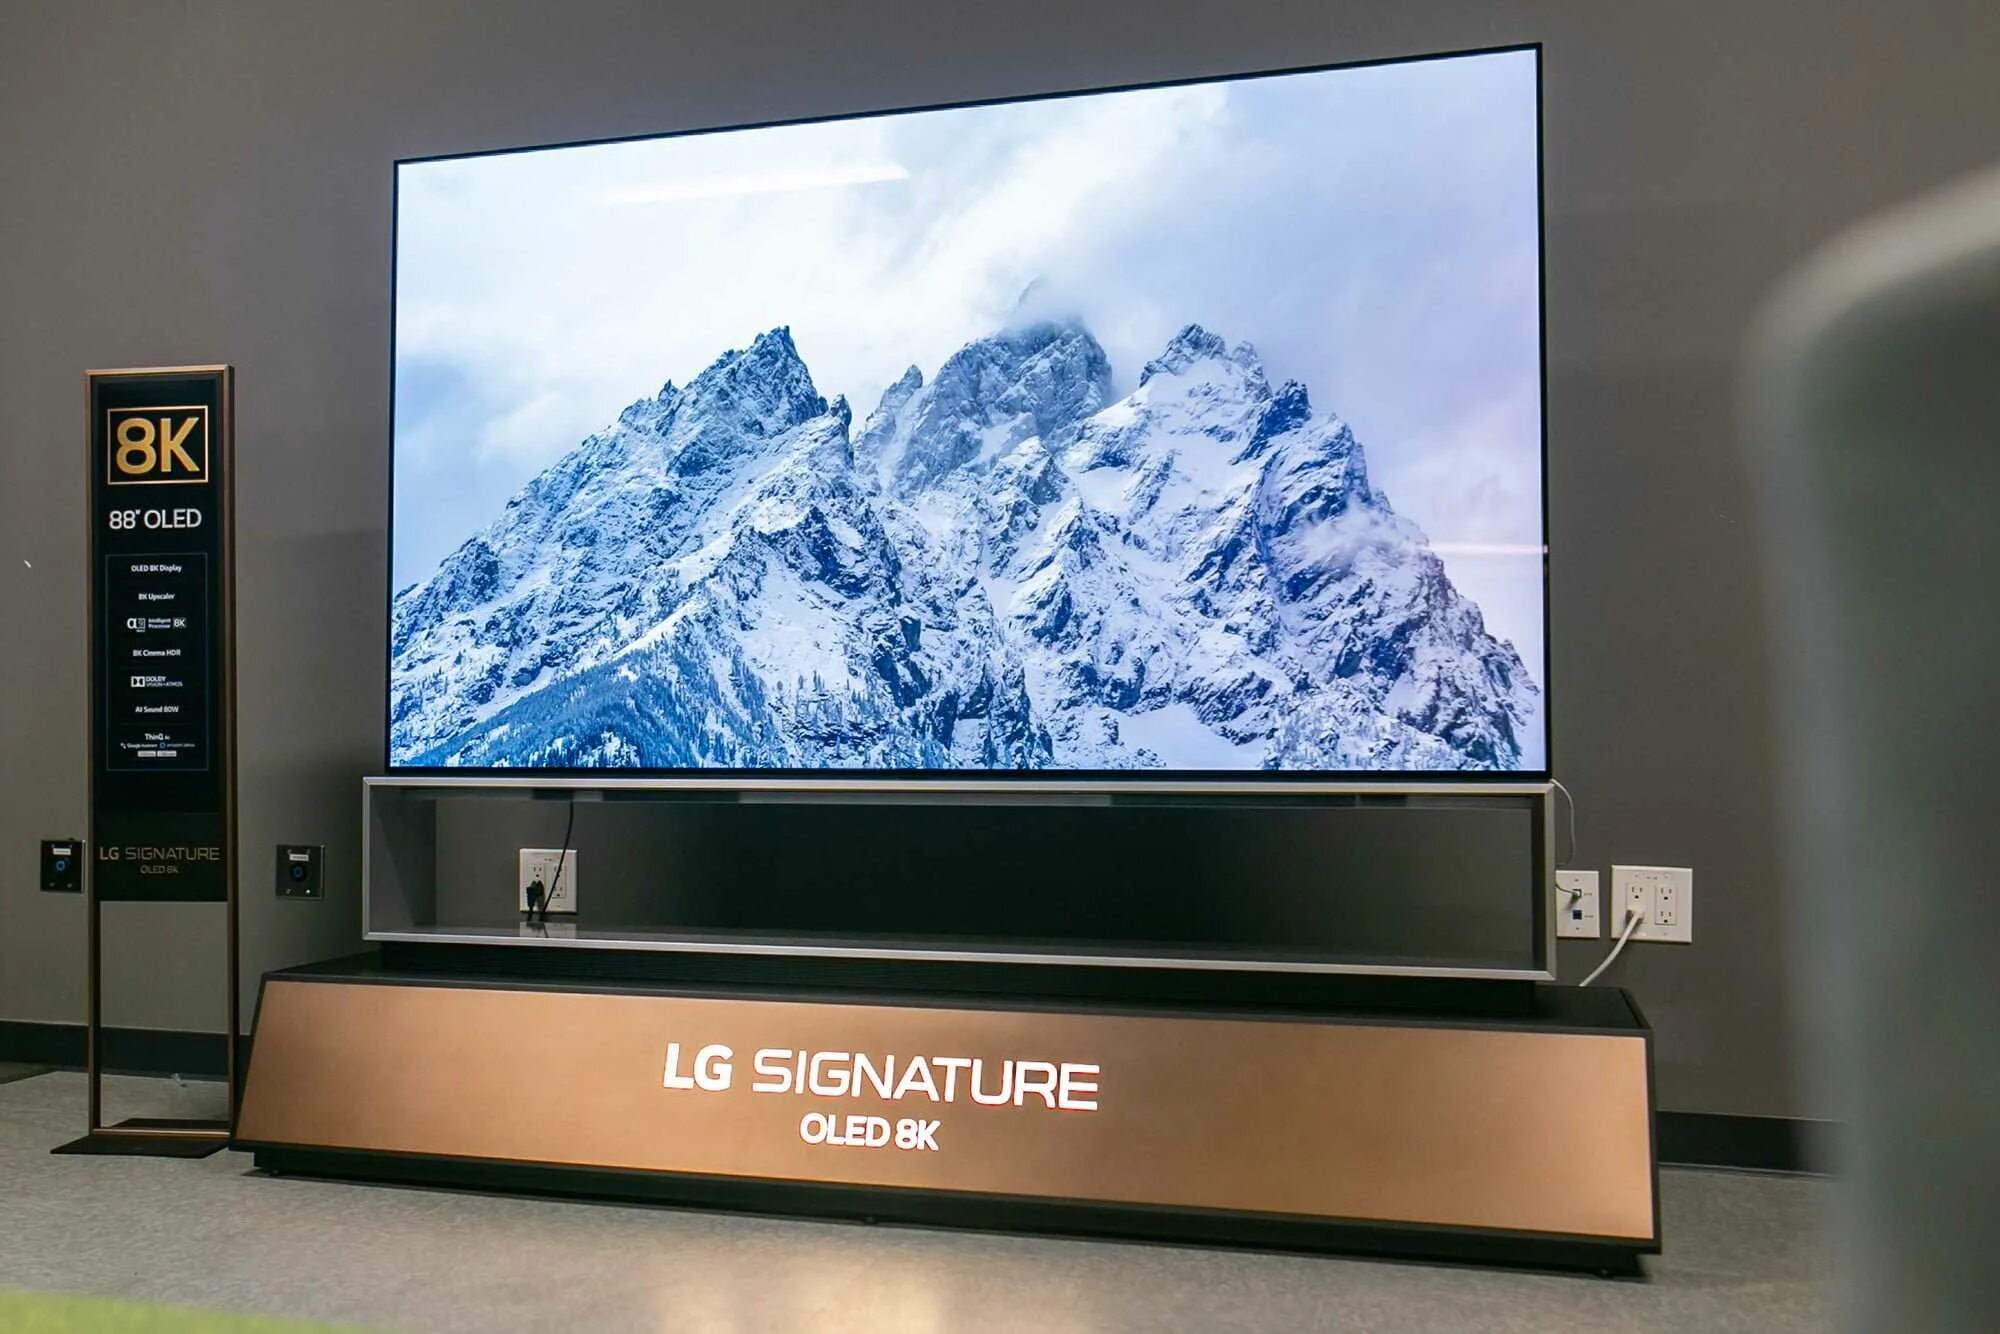 Найден новый телевизор. LG Signature 88 8k OLED. LG oled88zx9. Телевизор LG Signature 88 дюймов. LG Signature 88 8k OLED телевизор.